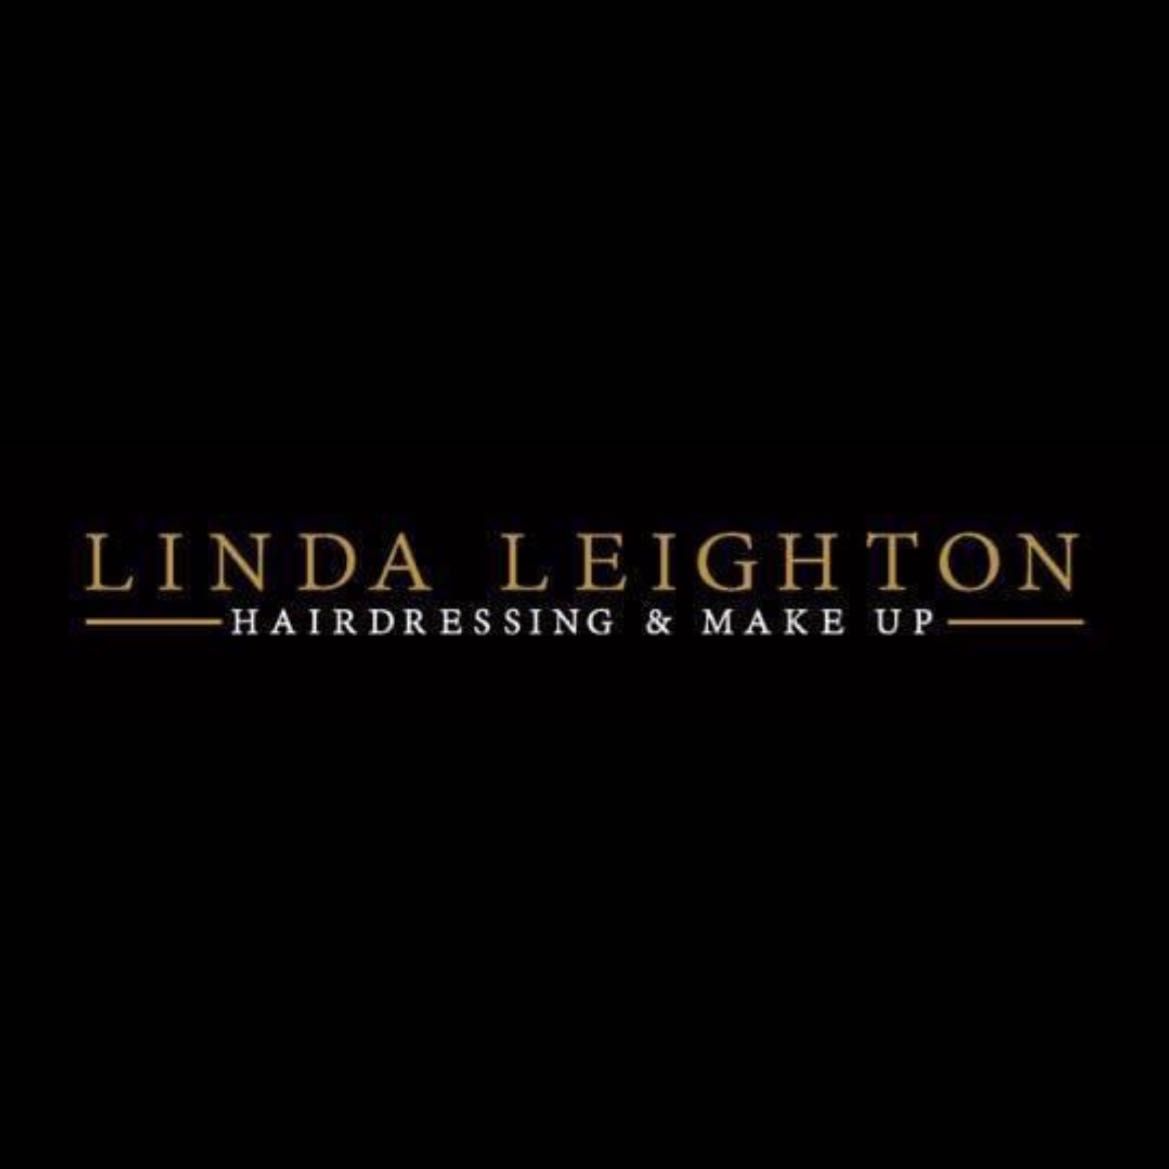 Linda Leighton Hairdressing, Make Up & Training Academy, 23 Tartnakilly Road, Glack, BT49 9NA, Limavady